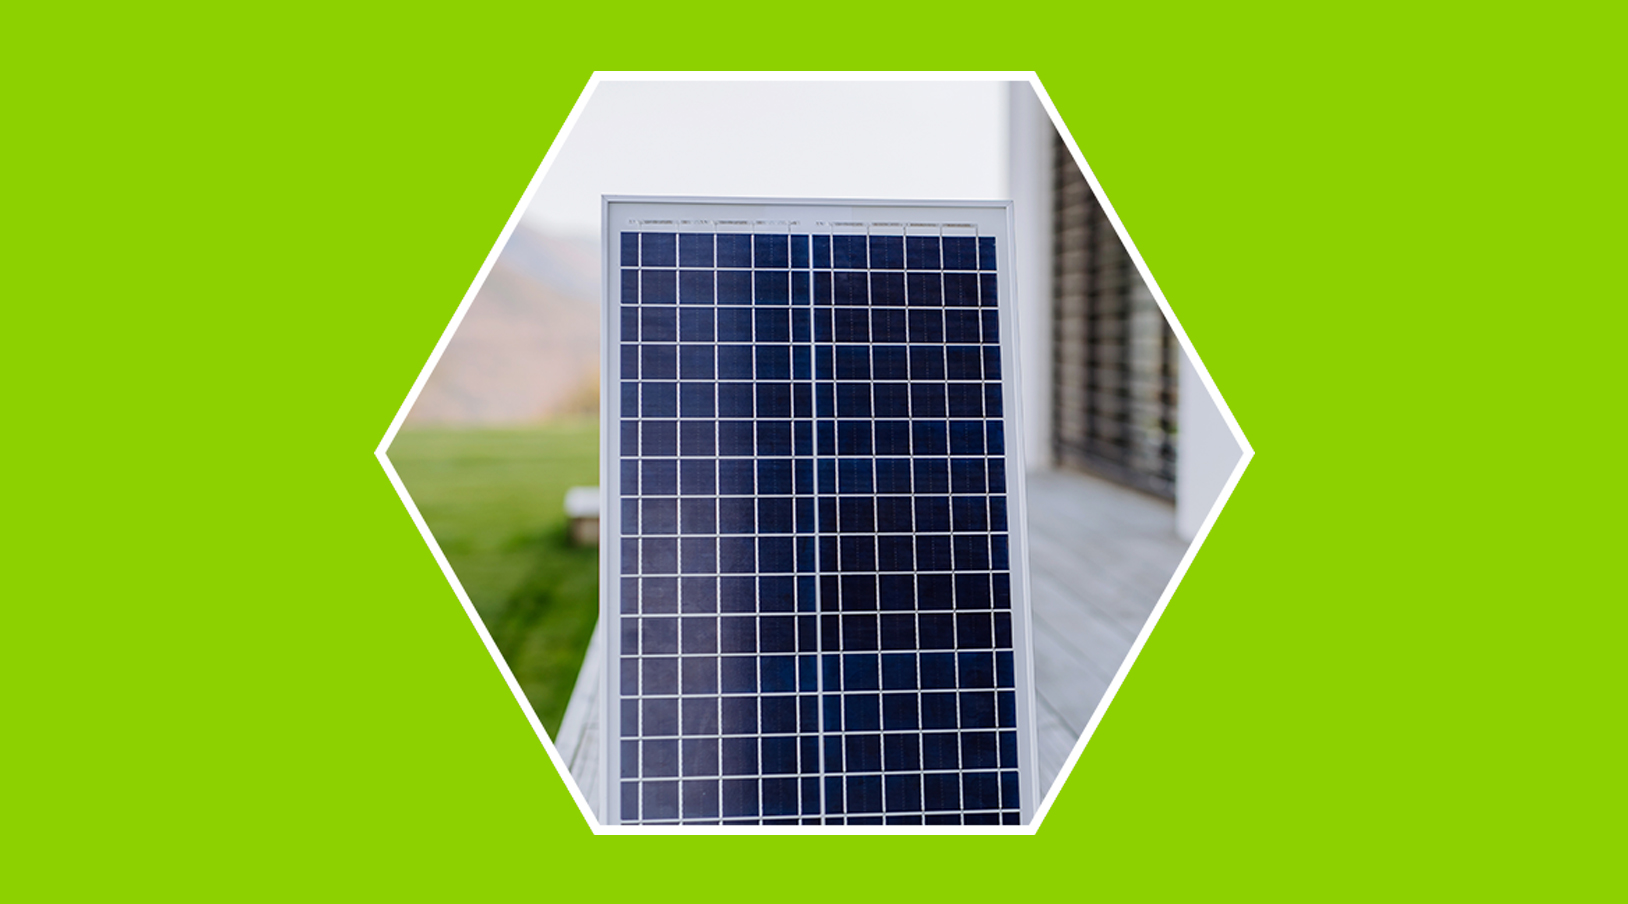 Duchas solares: tipos, funcionamiento, instalación y ventajas